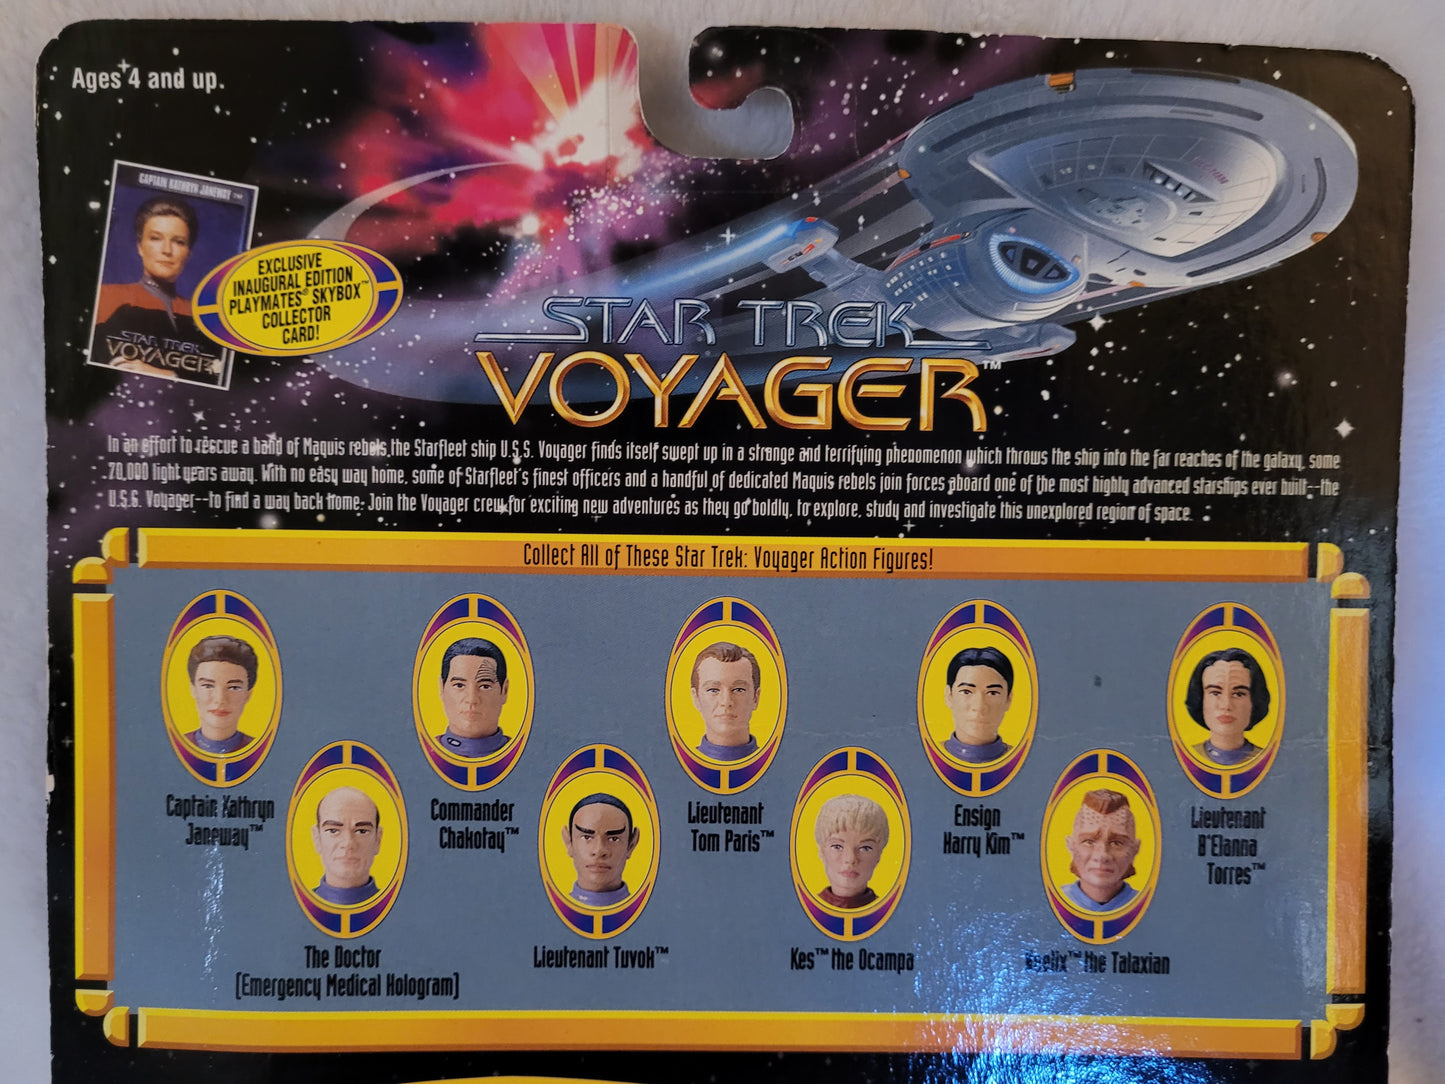 Star Trek Voyager: Neelix Action Figure